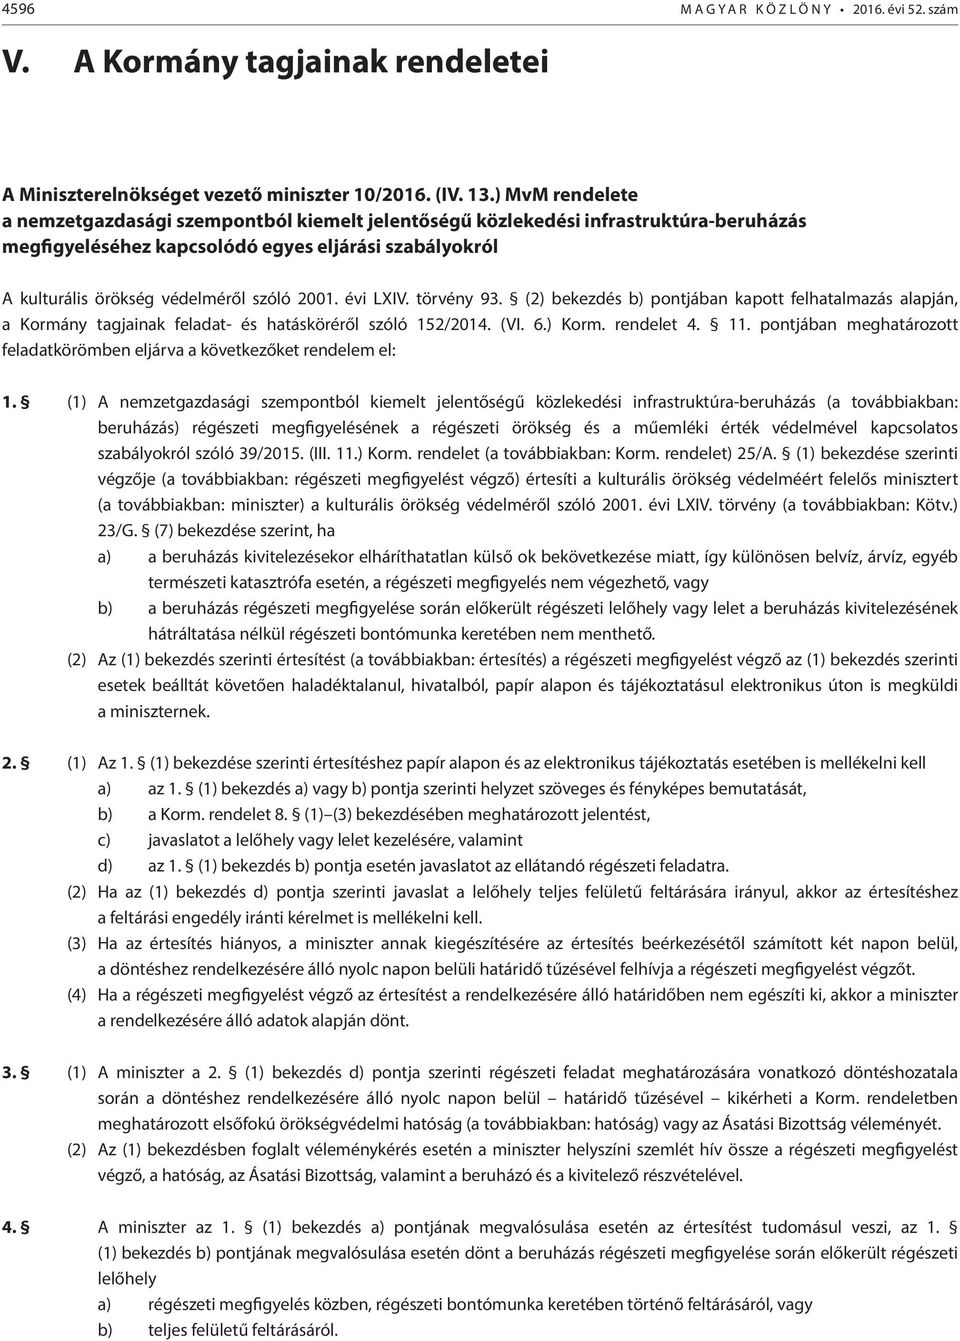 2001. évi LXIV. törvény 93. (2) bekezdés b) pontjában kapott felhatalmazás alapján, a Kormány tagjainak feladat- és hatásköréről szóló 152/2014. (VI. 6.) Korm. rendelet 4. 11.